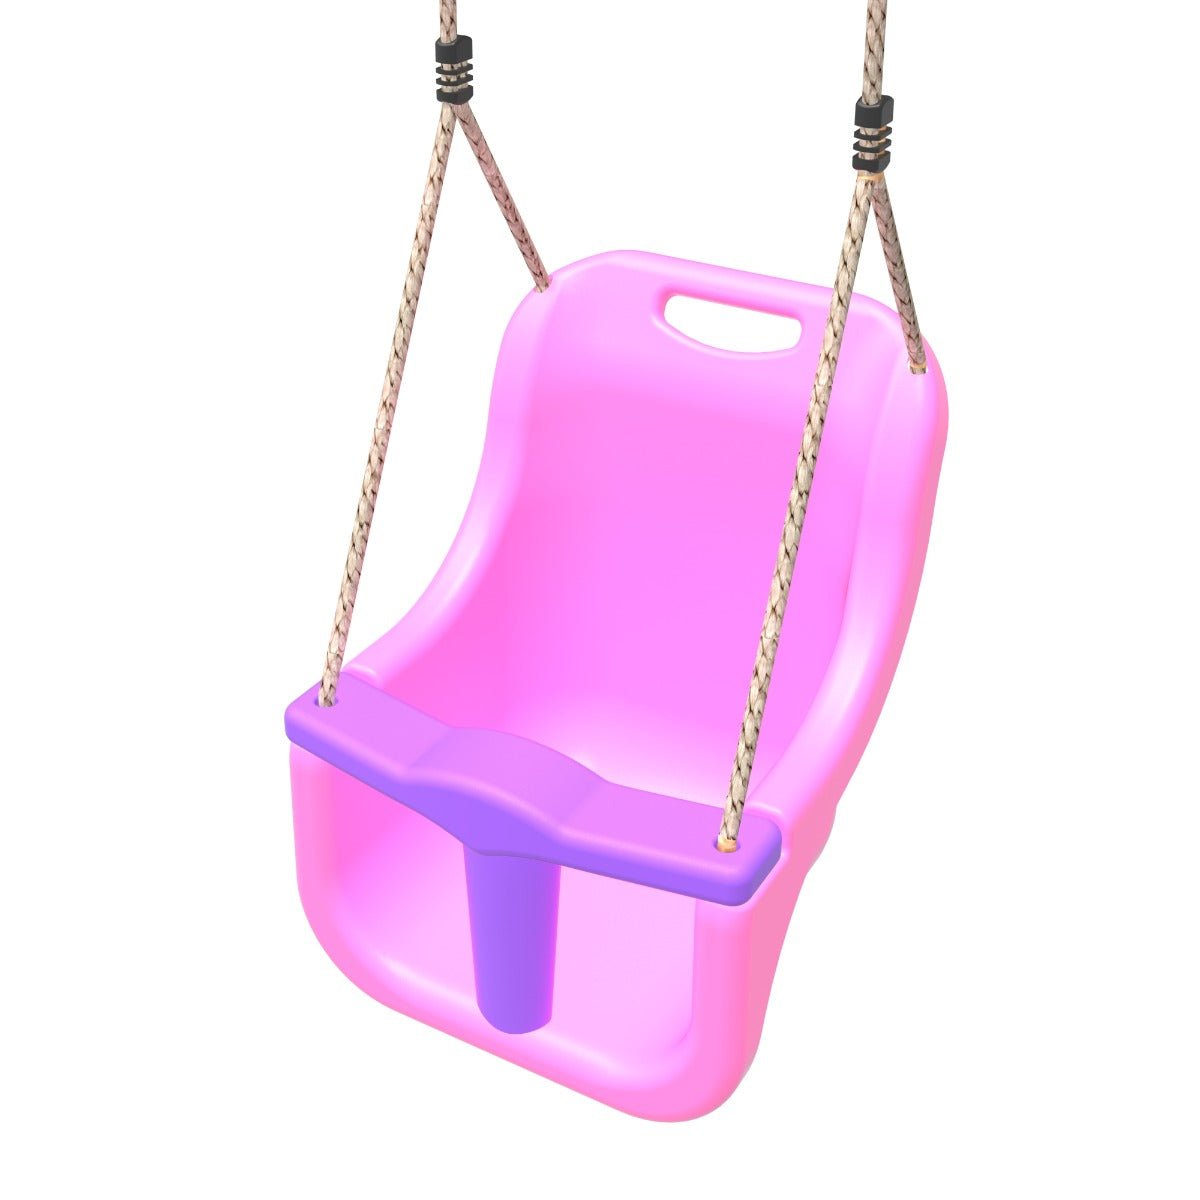 Rebo Baby Swing Seat - Pink